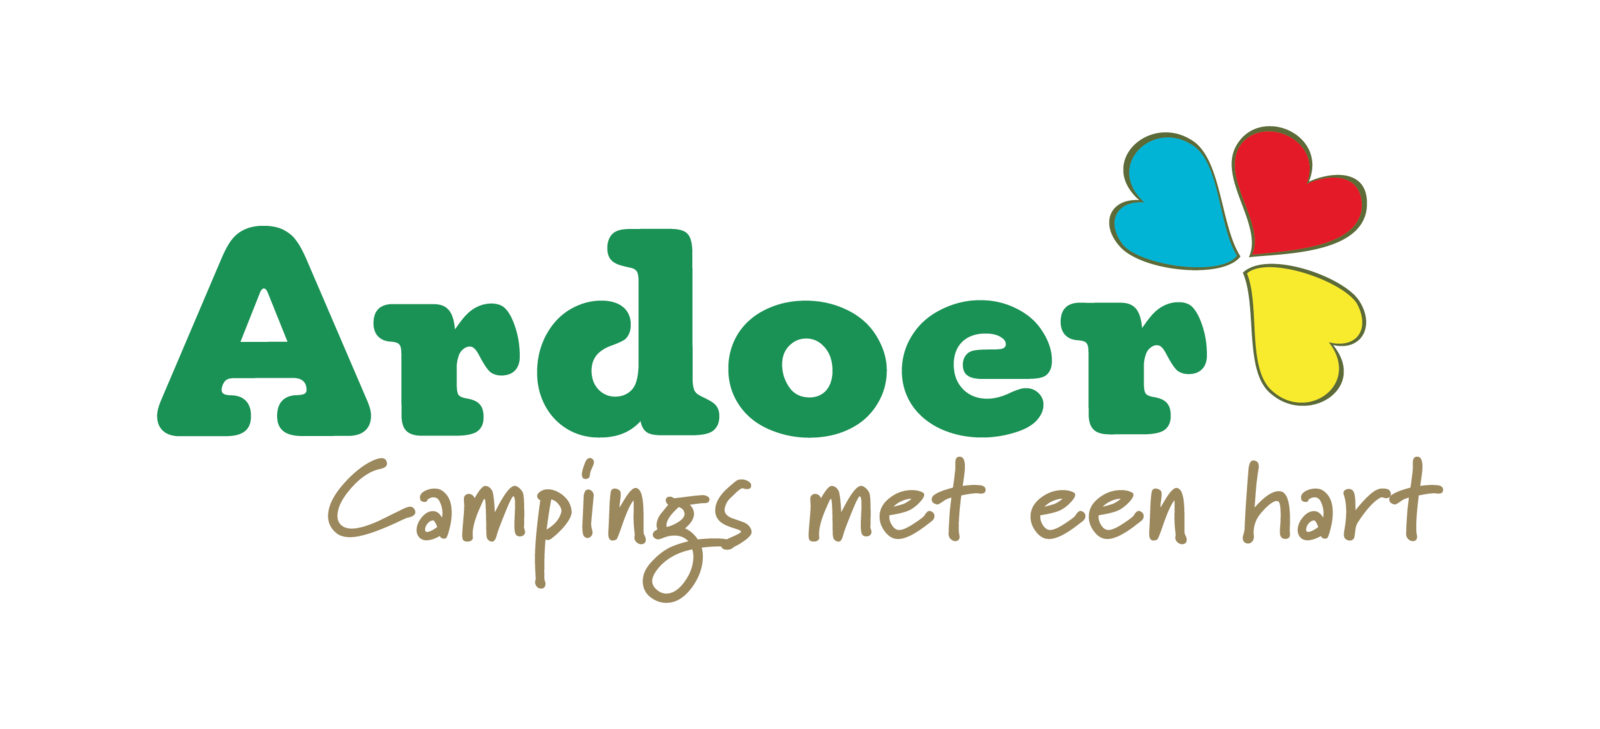 Ardoer campings Nederland